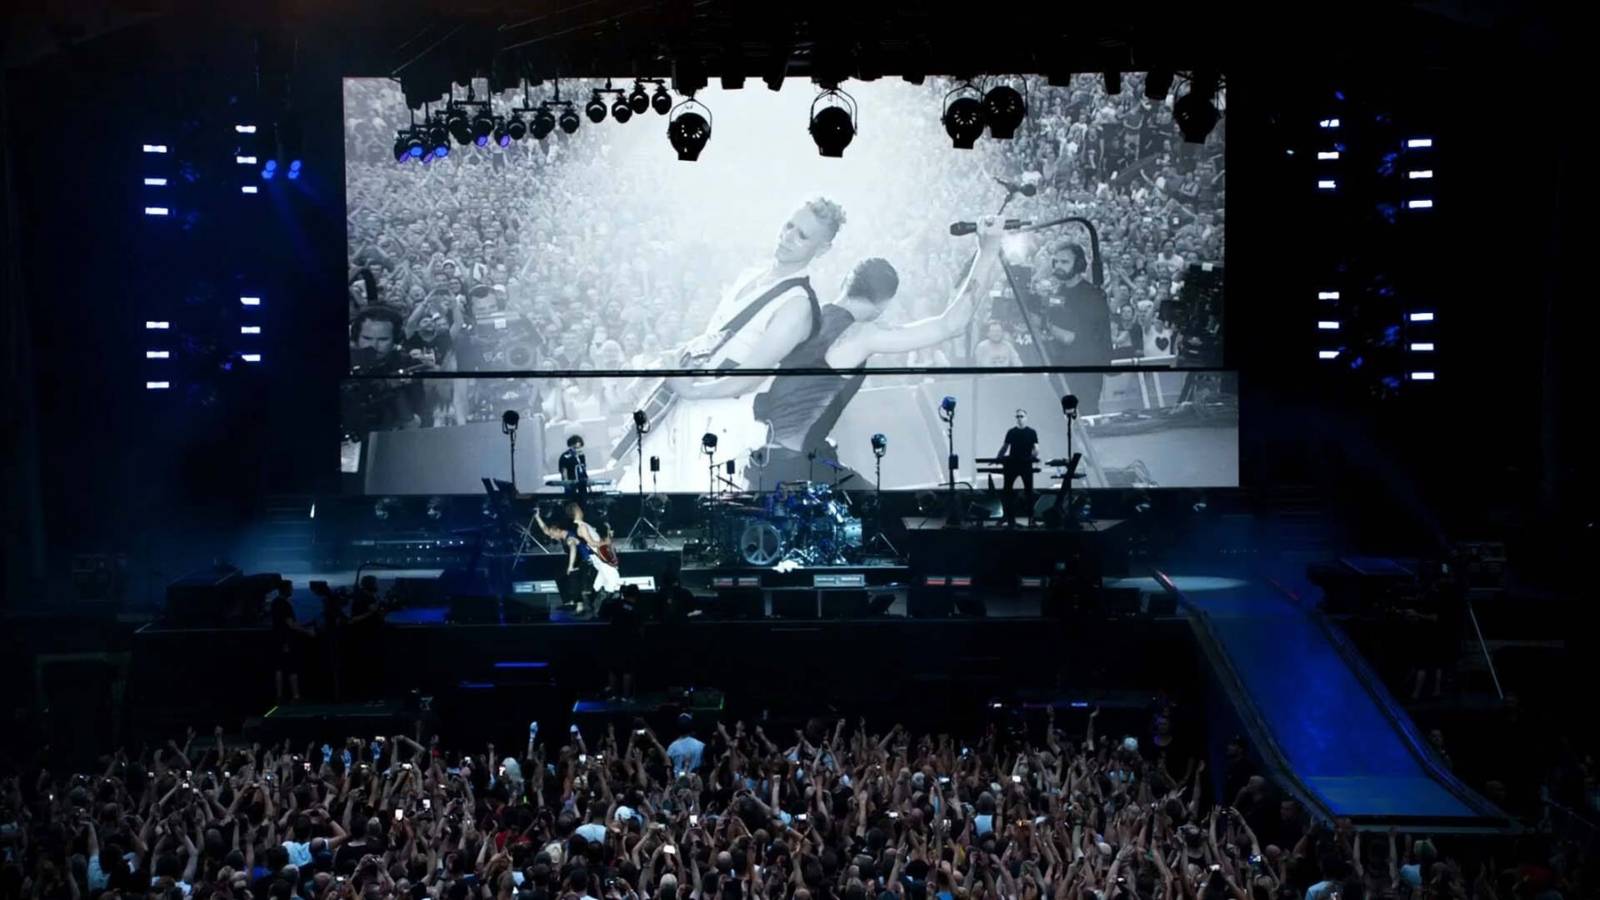 RECENZE: Náboženství jménem Depeche Mode ve filmu, který fanoušky dojme k slzám